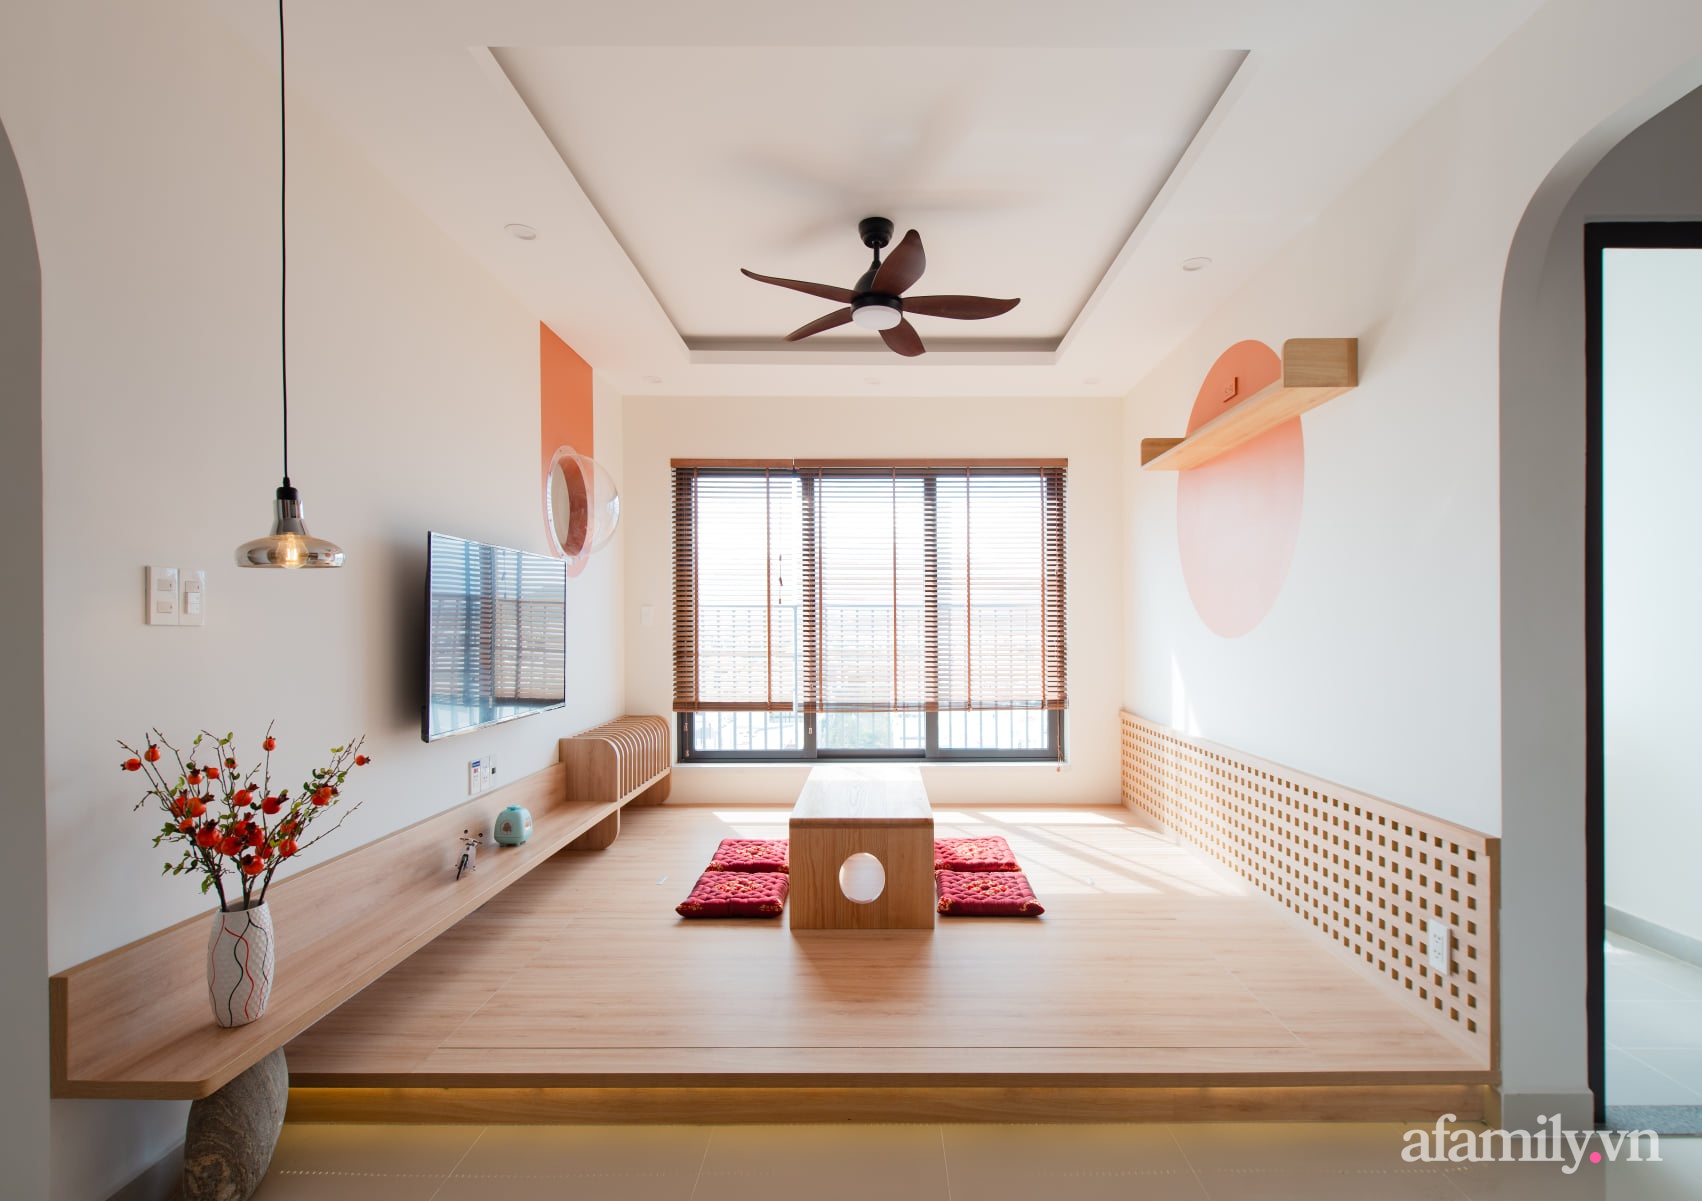 Căn hộ 78m² với tông cam đất ngọt ngào cùng đường cong mềm mại mang hơi hướng phong cách Nhật ở Nha Trang - Ảnh 4.